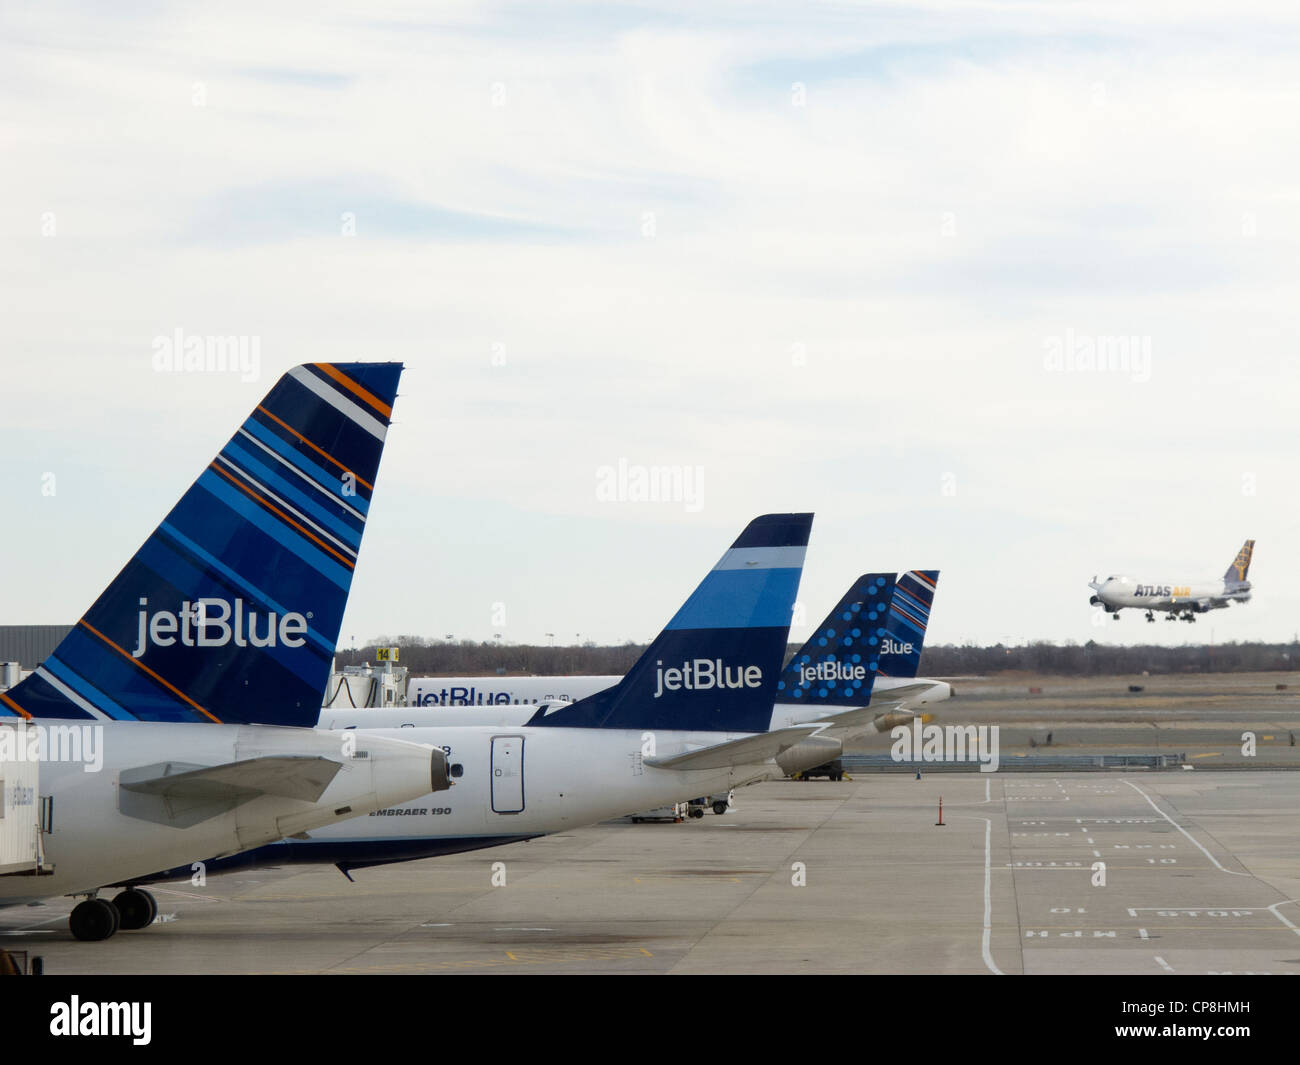 JetBlue fleet on tarmac. Stock Photo